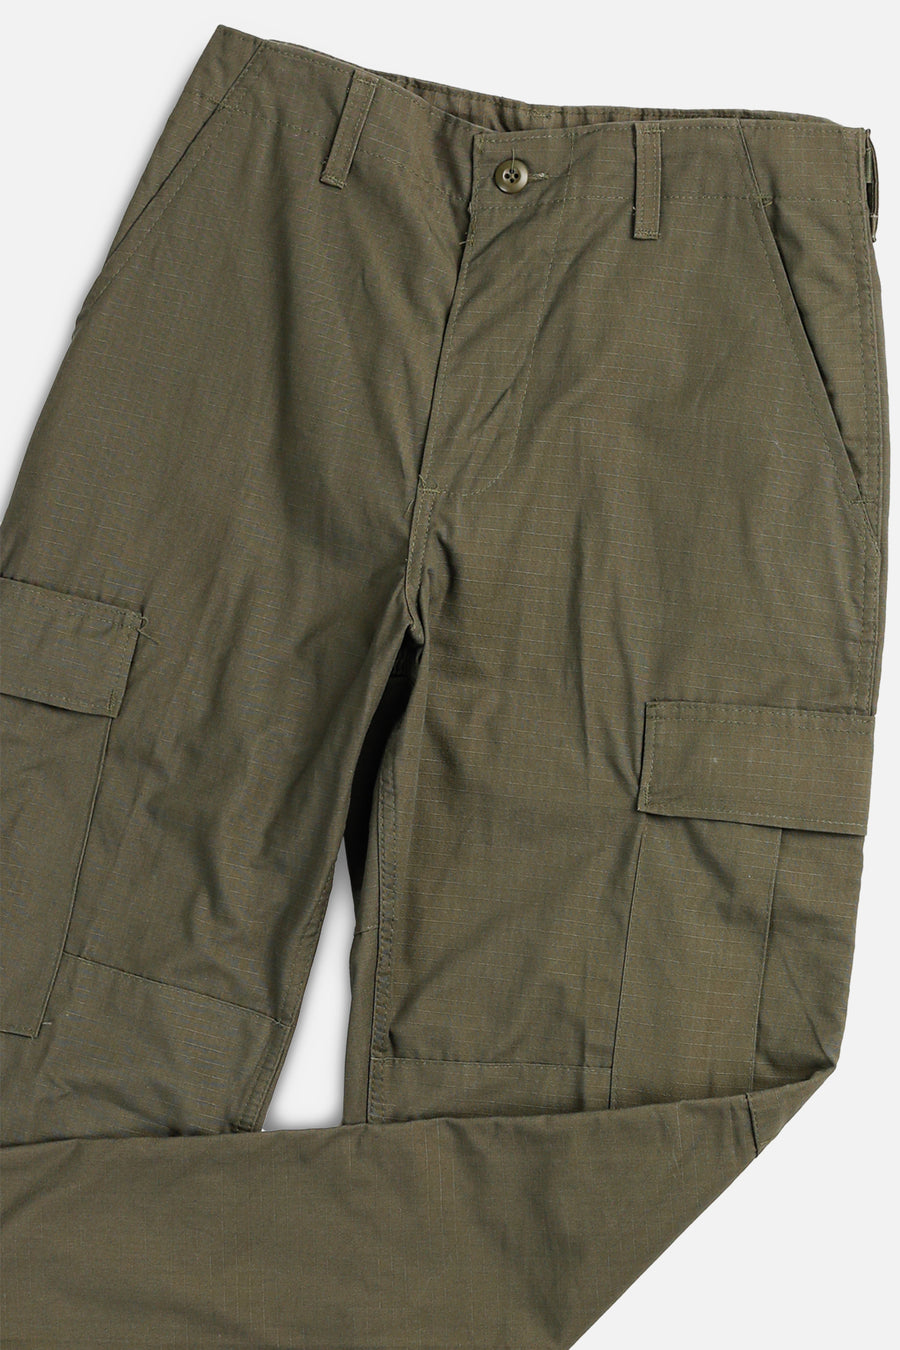 Vintage BDU Pants - S